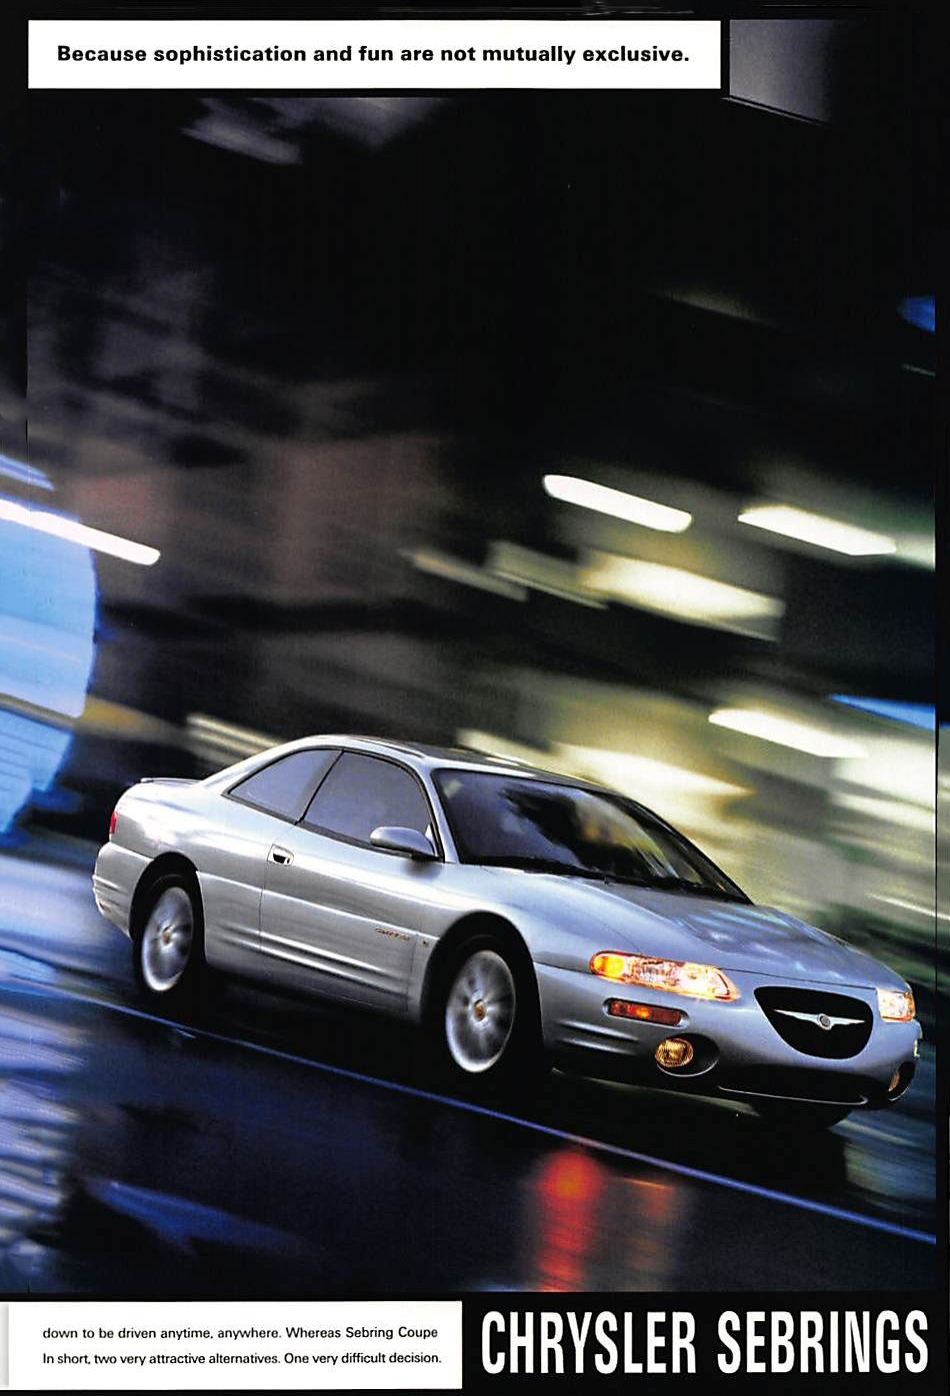 2000 Chrysler Sebring Coupe